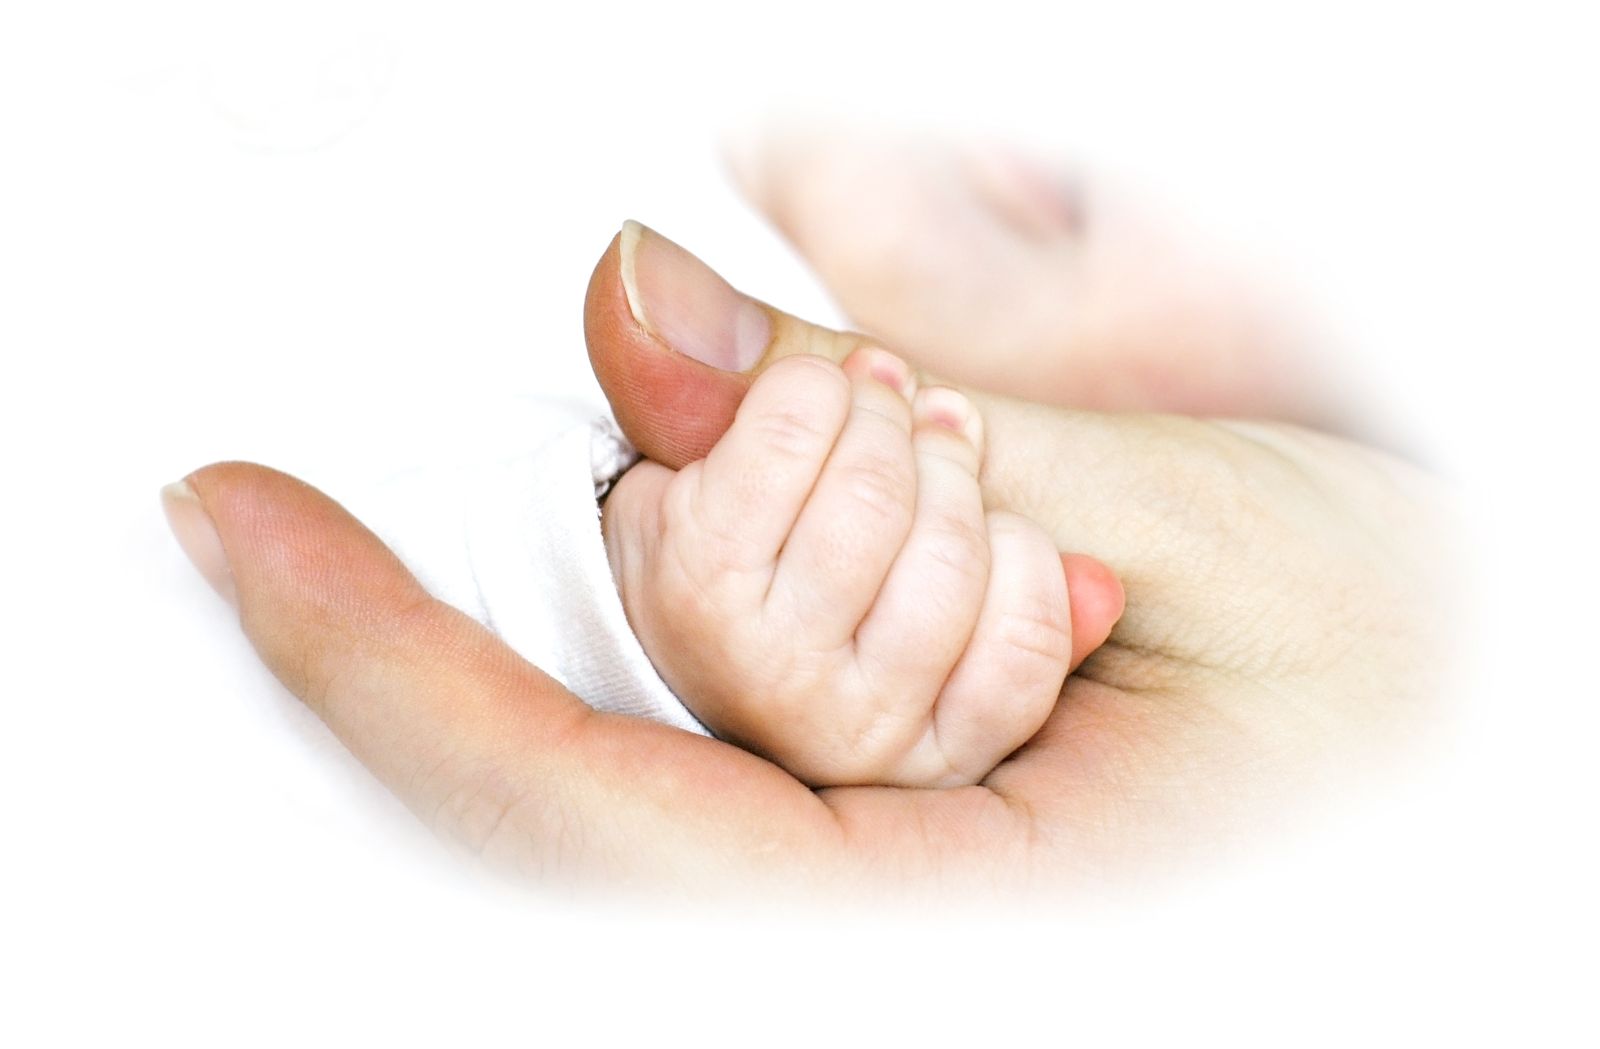 Acercamiento a la mano de una mujer con un bebe agarrando su dedo pulgar